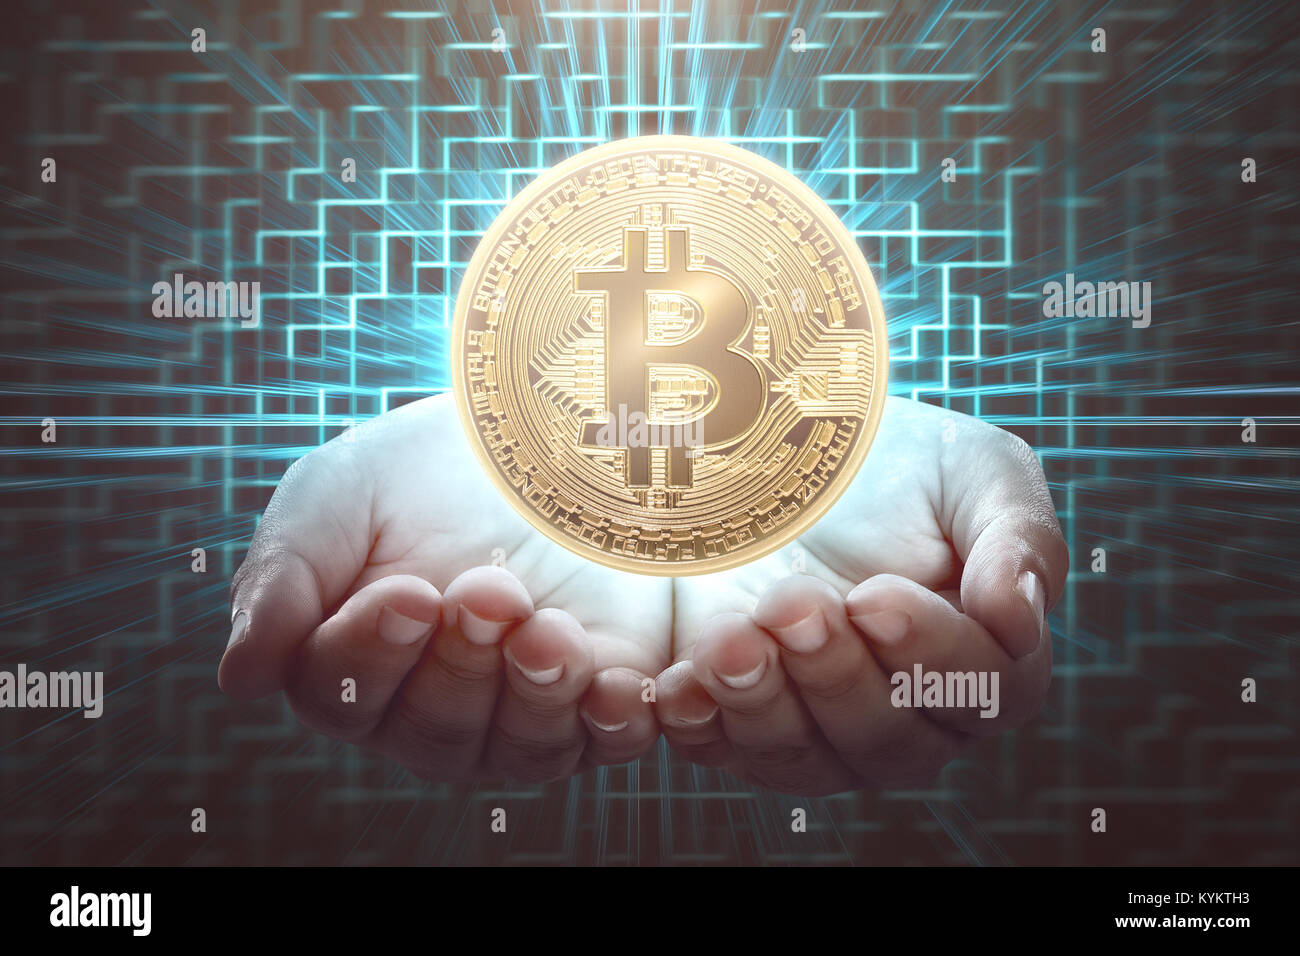 Tenir la main de l'homme. bitcoin Concept image Cryptocurrency Banque D'Images